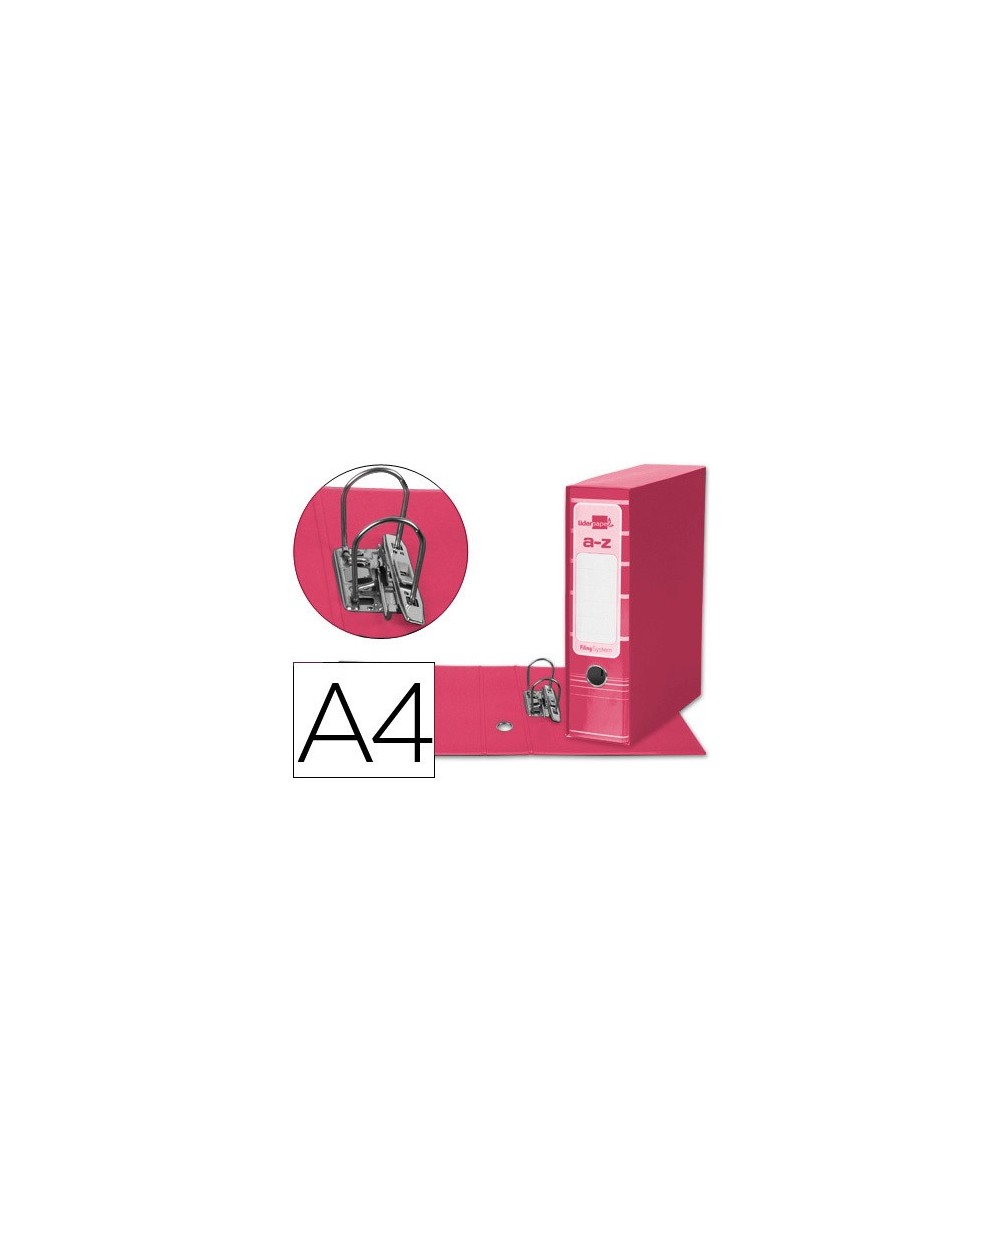 Archivador de palanca liderpap el a4 filing system forrado sin rado lomo 80mm rosa con caja y compresor metalico